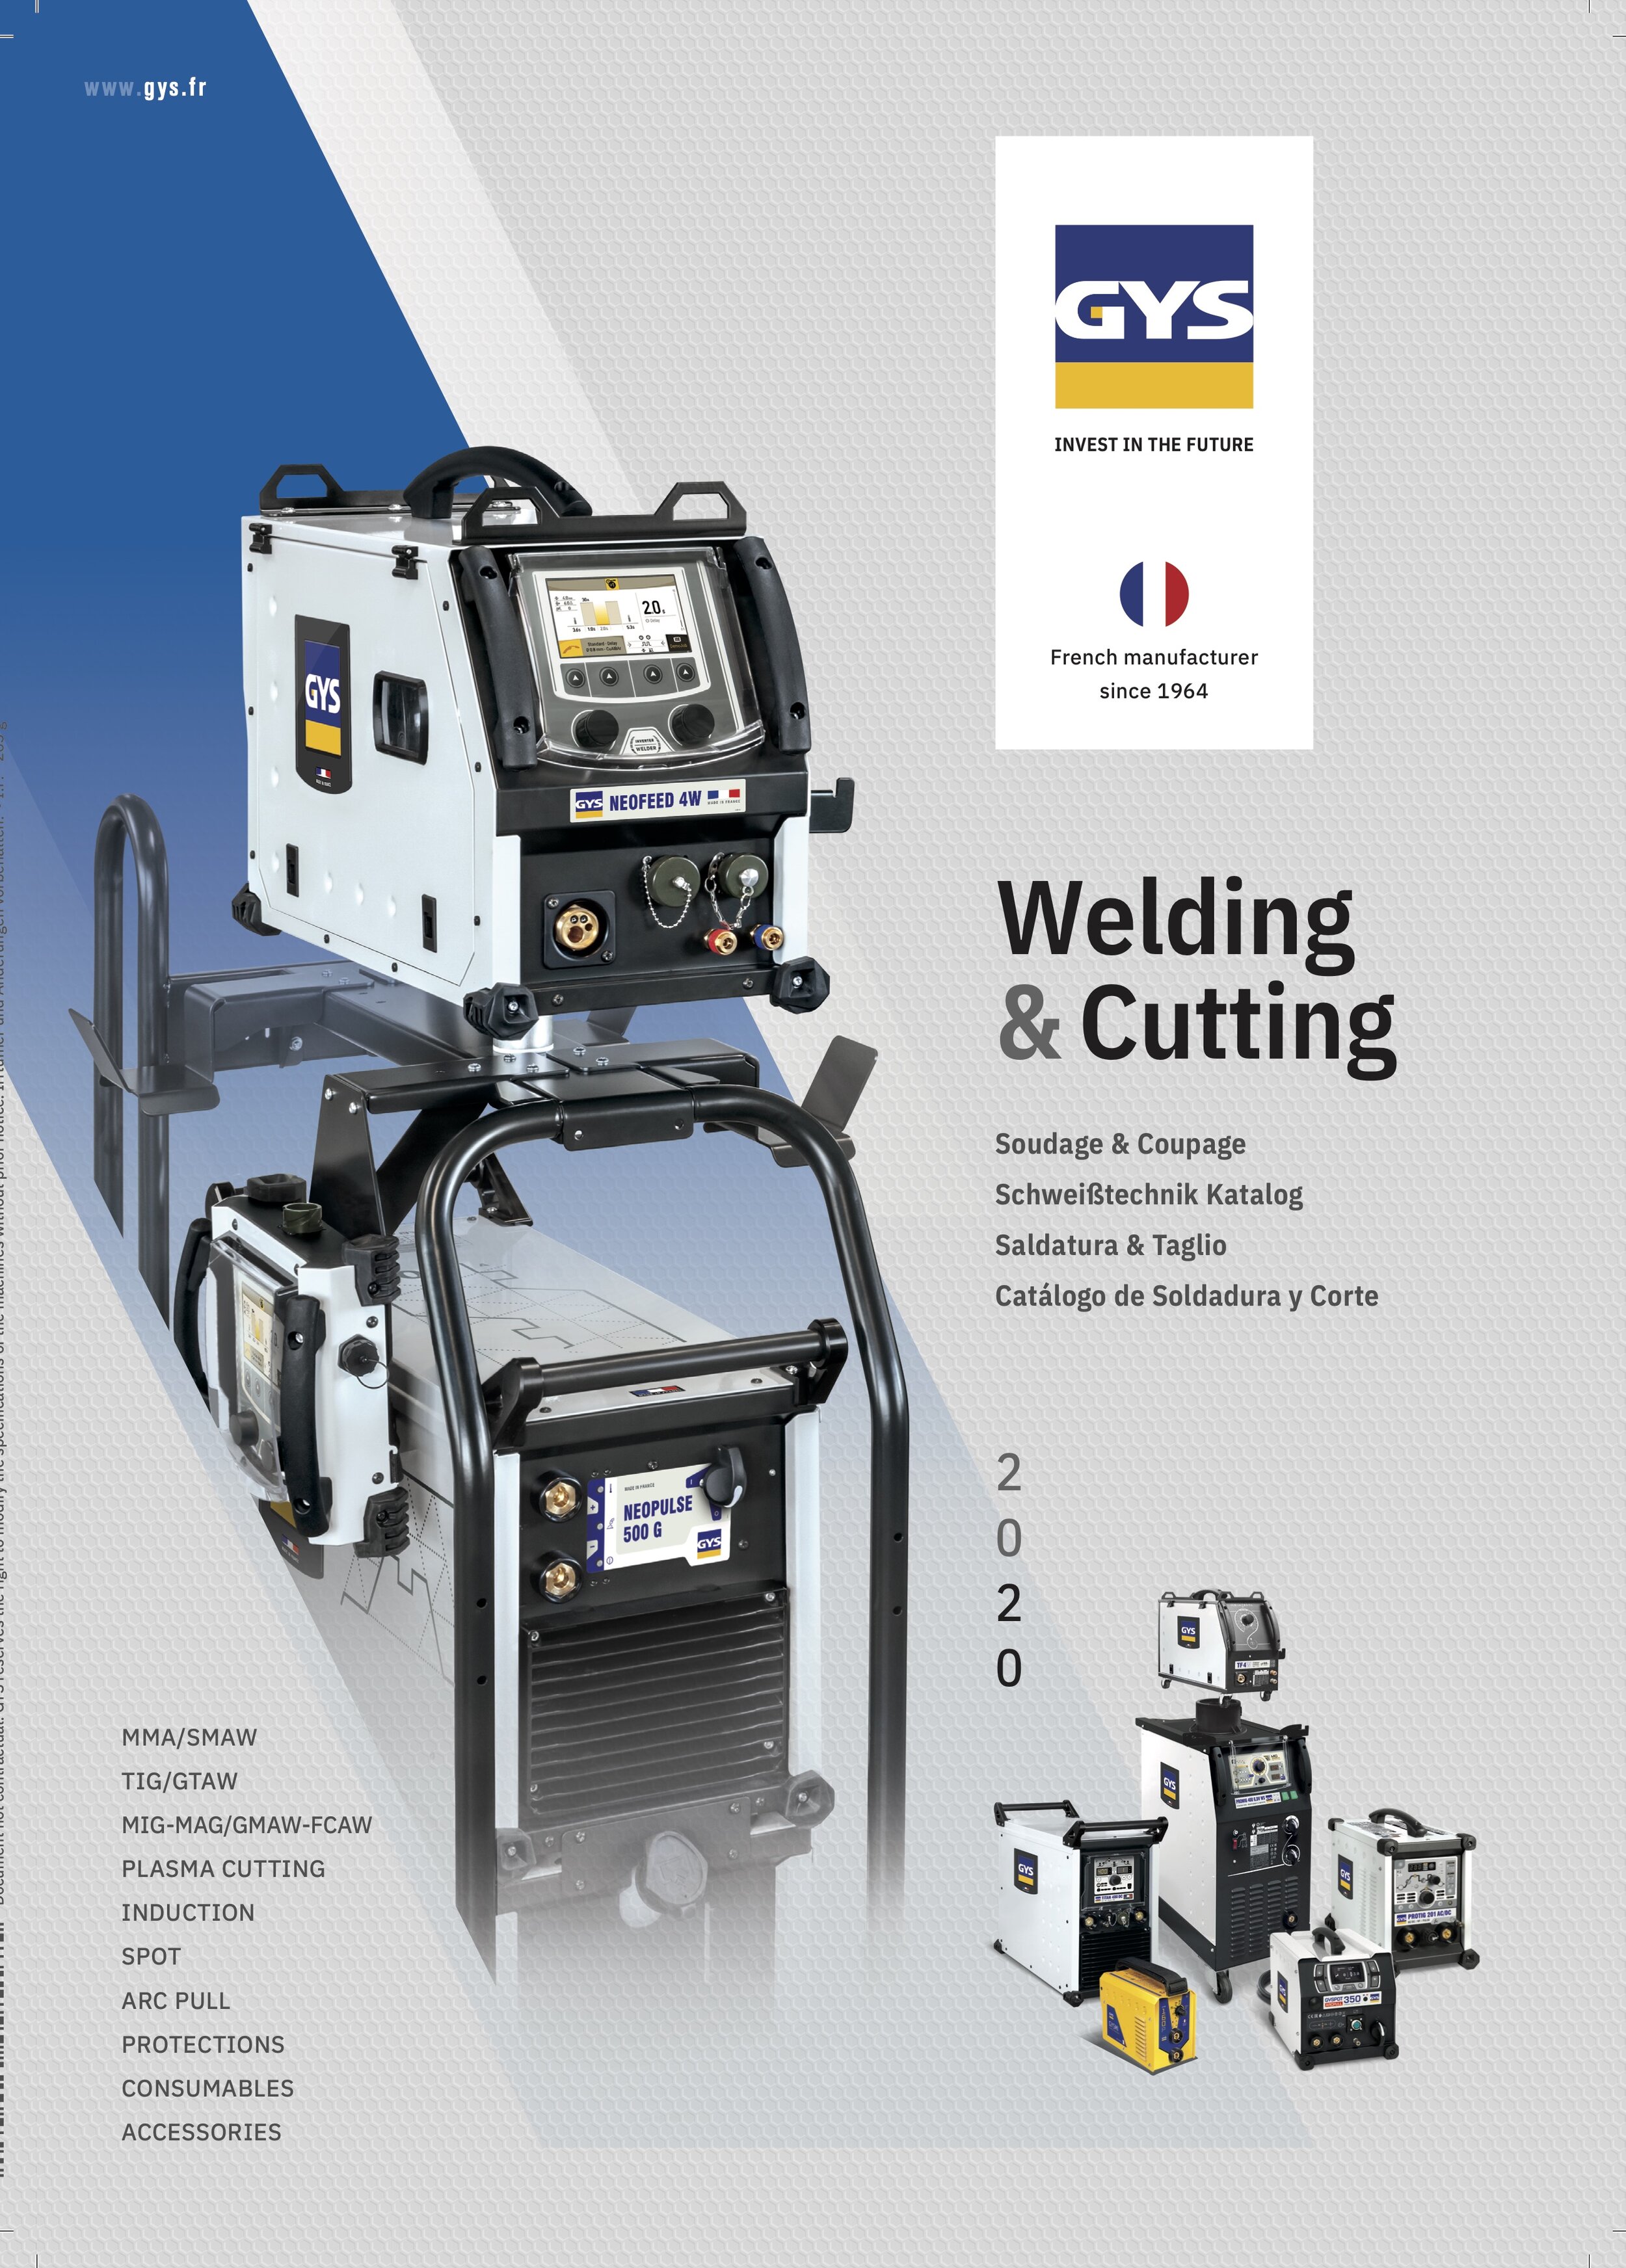 GYS Welding & Cutting